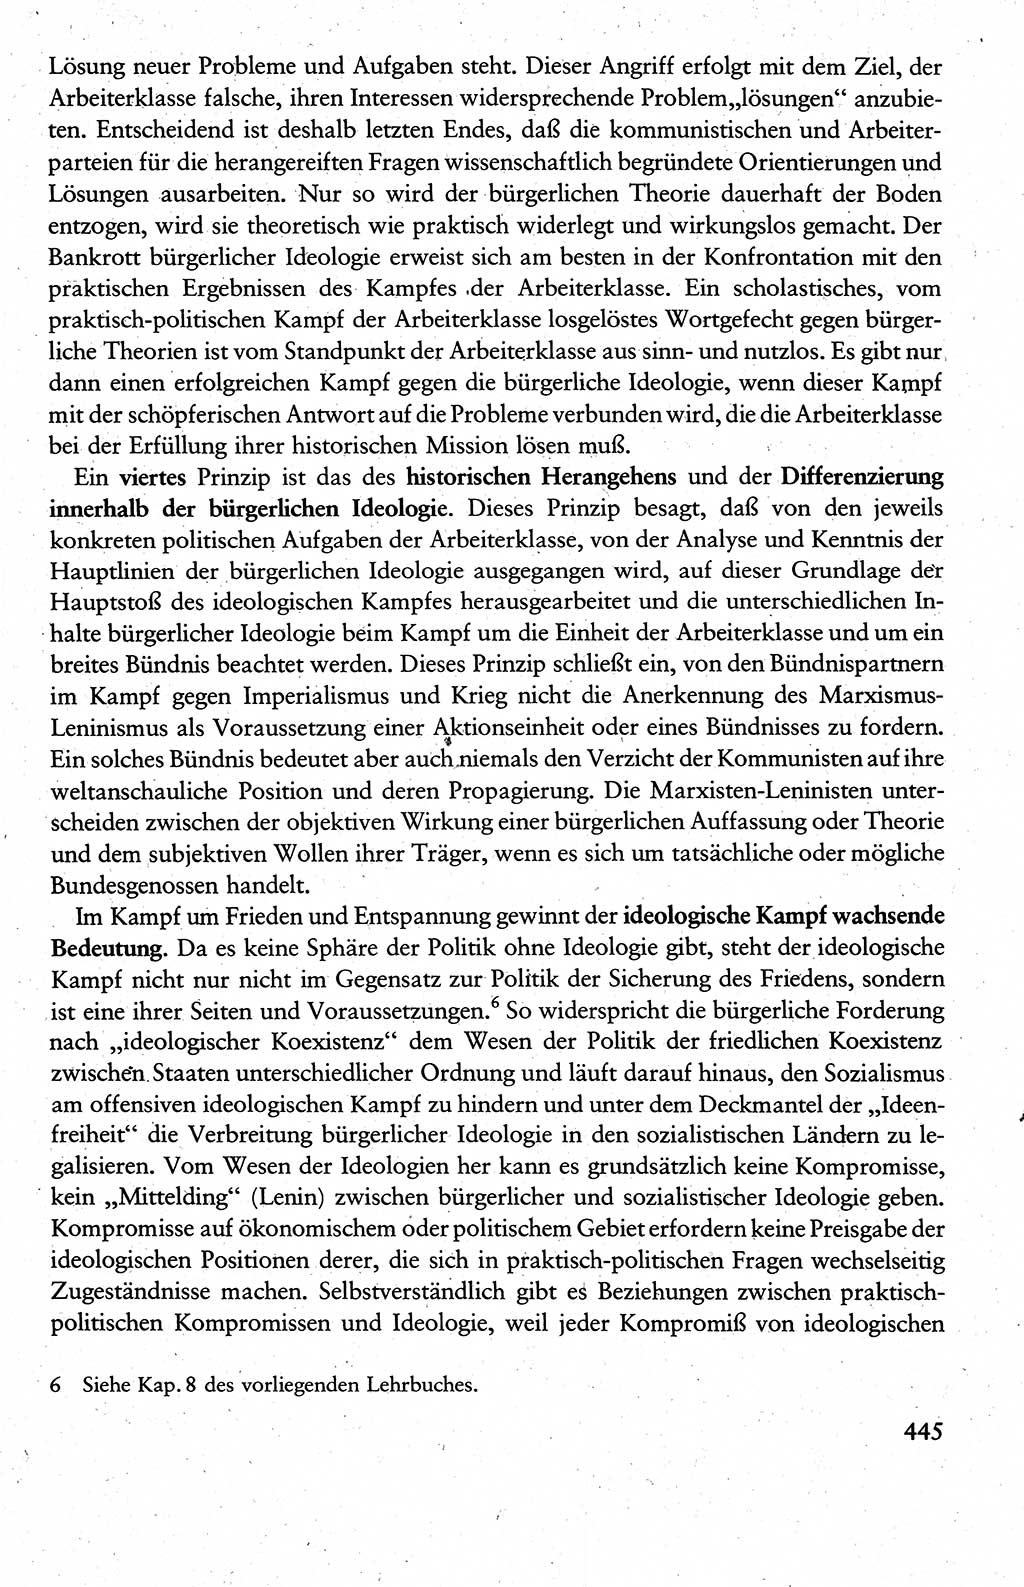 Wissenschaftlicher Kommunismus [Deutsche Demokratische Republik (DDR)], Lehrbuch für das marxistisch-leninistische Grundlagenstudium 1983, Seite 445 (Wiss. Komm. DDR Lb. 1983, S. 445)